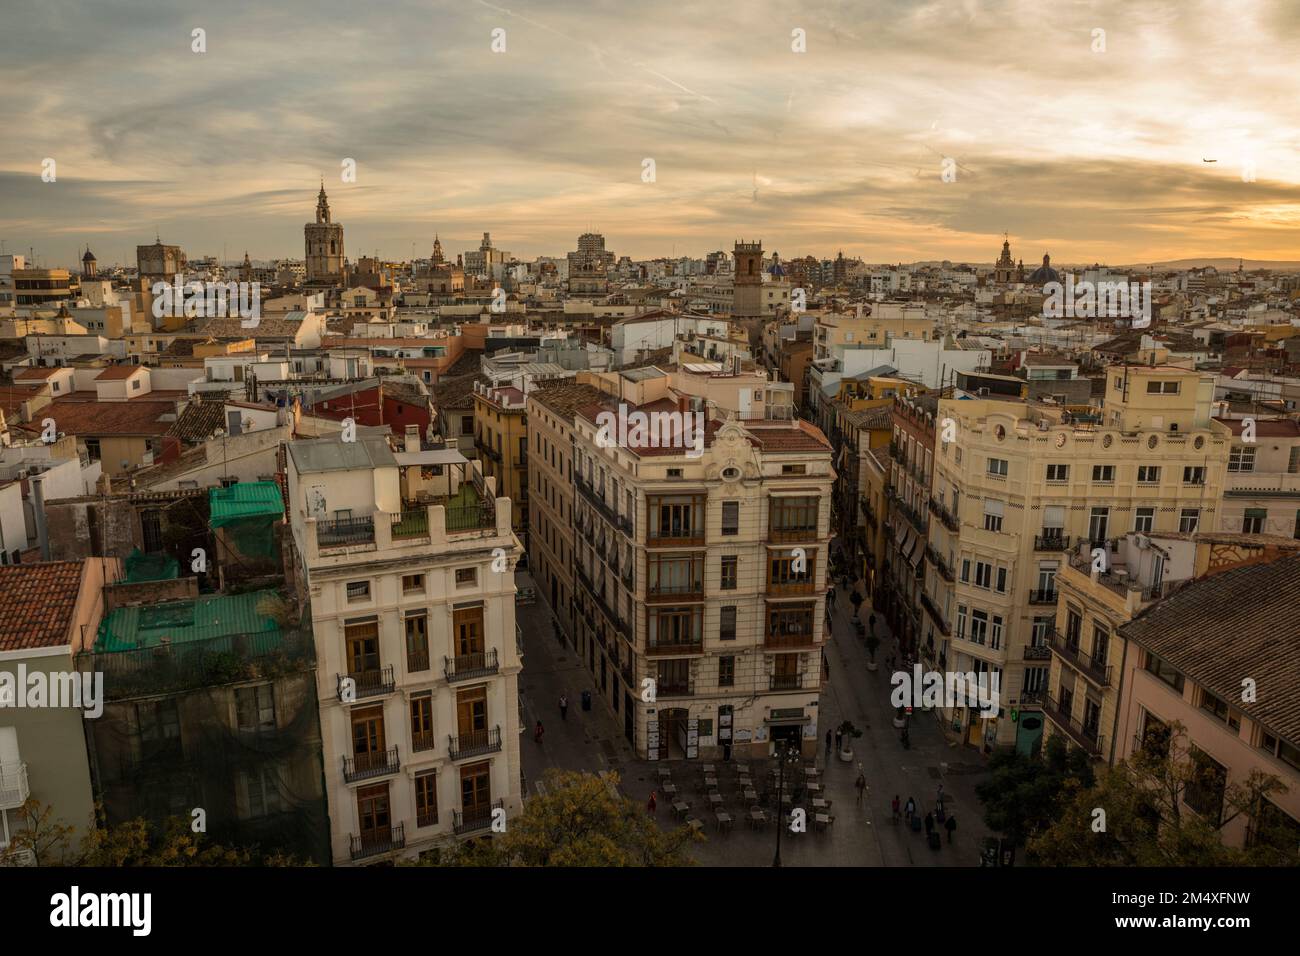 Spain, Valencia, City apartments at dusk Stock Photo